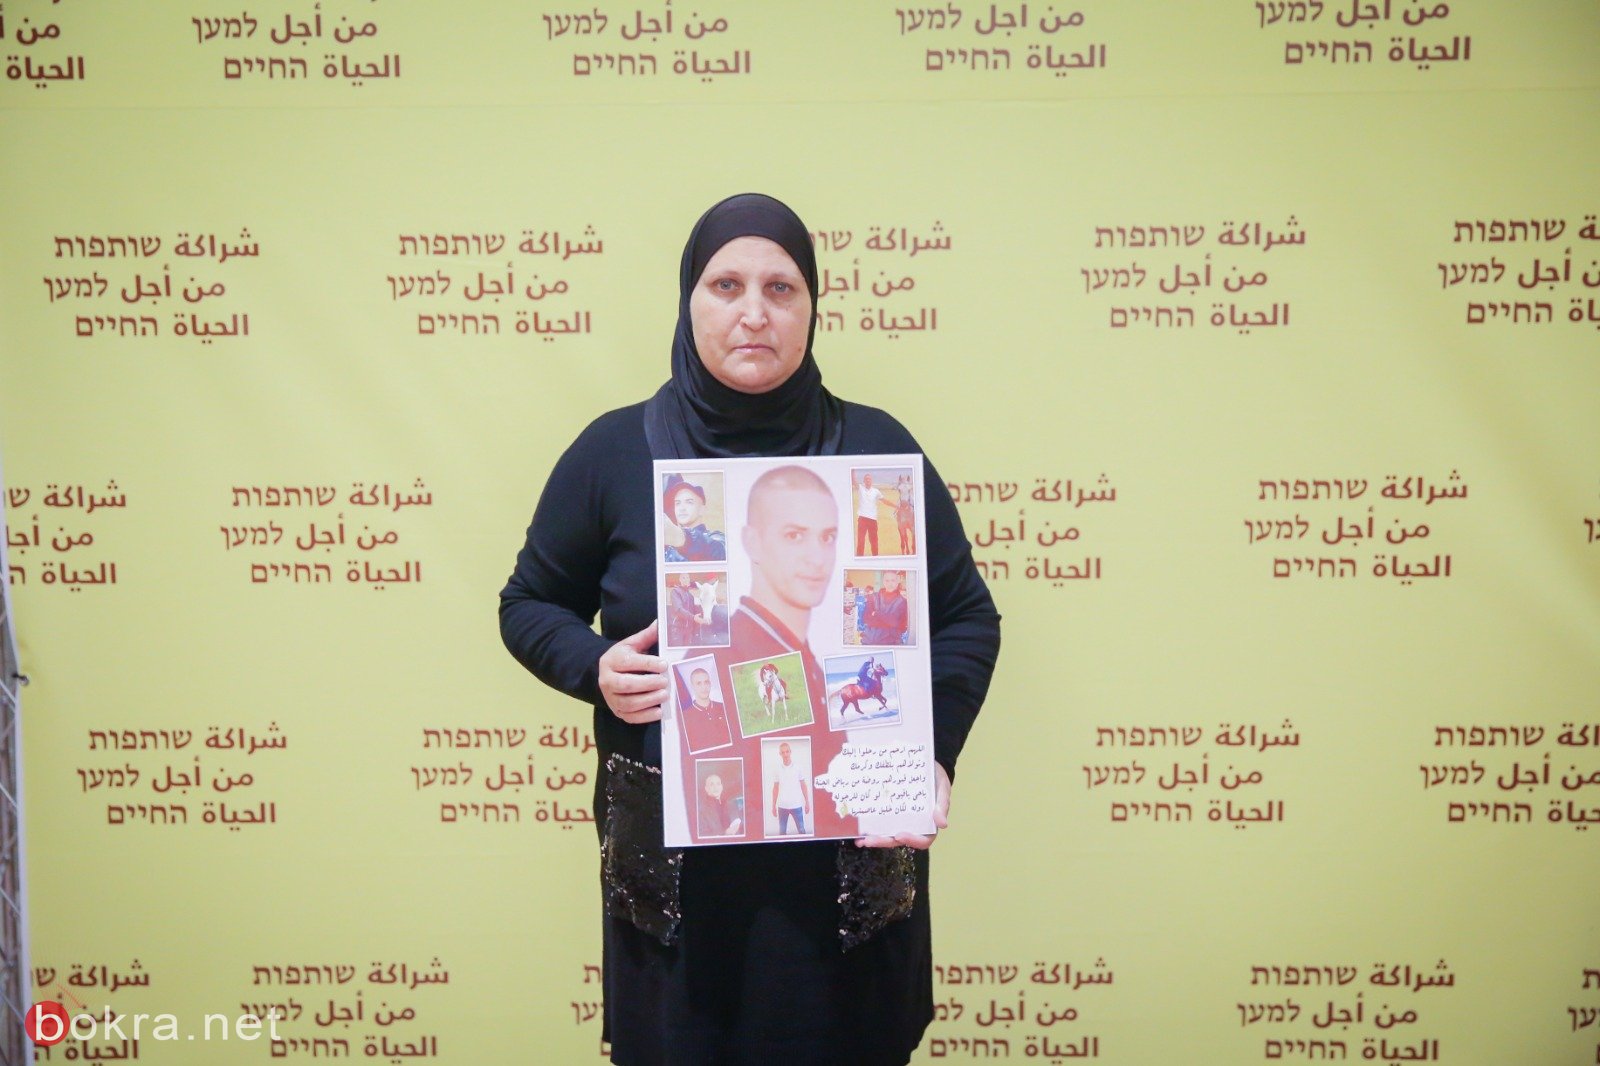 امهات ثكالى يعلنَّ عن مظاهرة قطرية في تل ابيب الاسبوع القادم كتصعيد ضد الجريمة-11